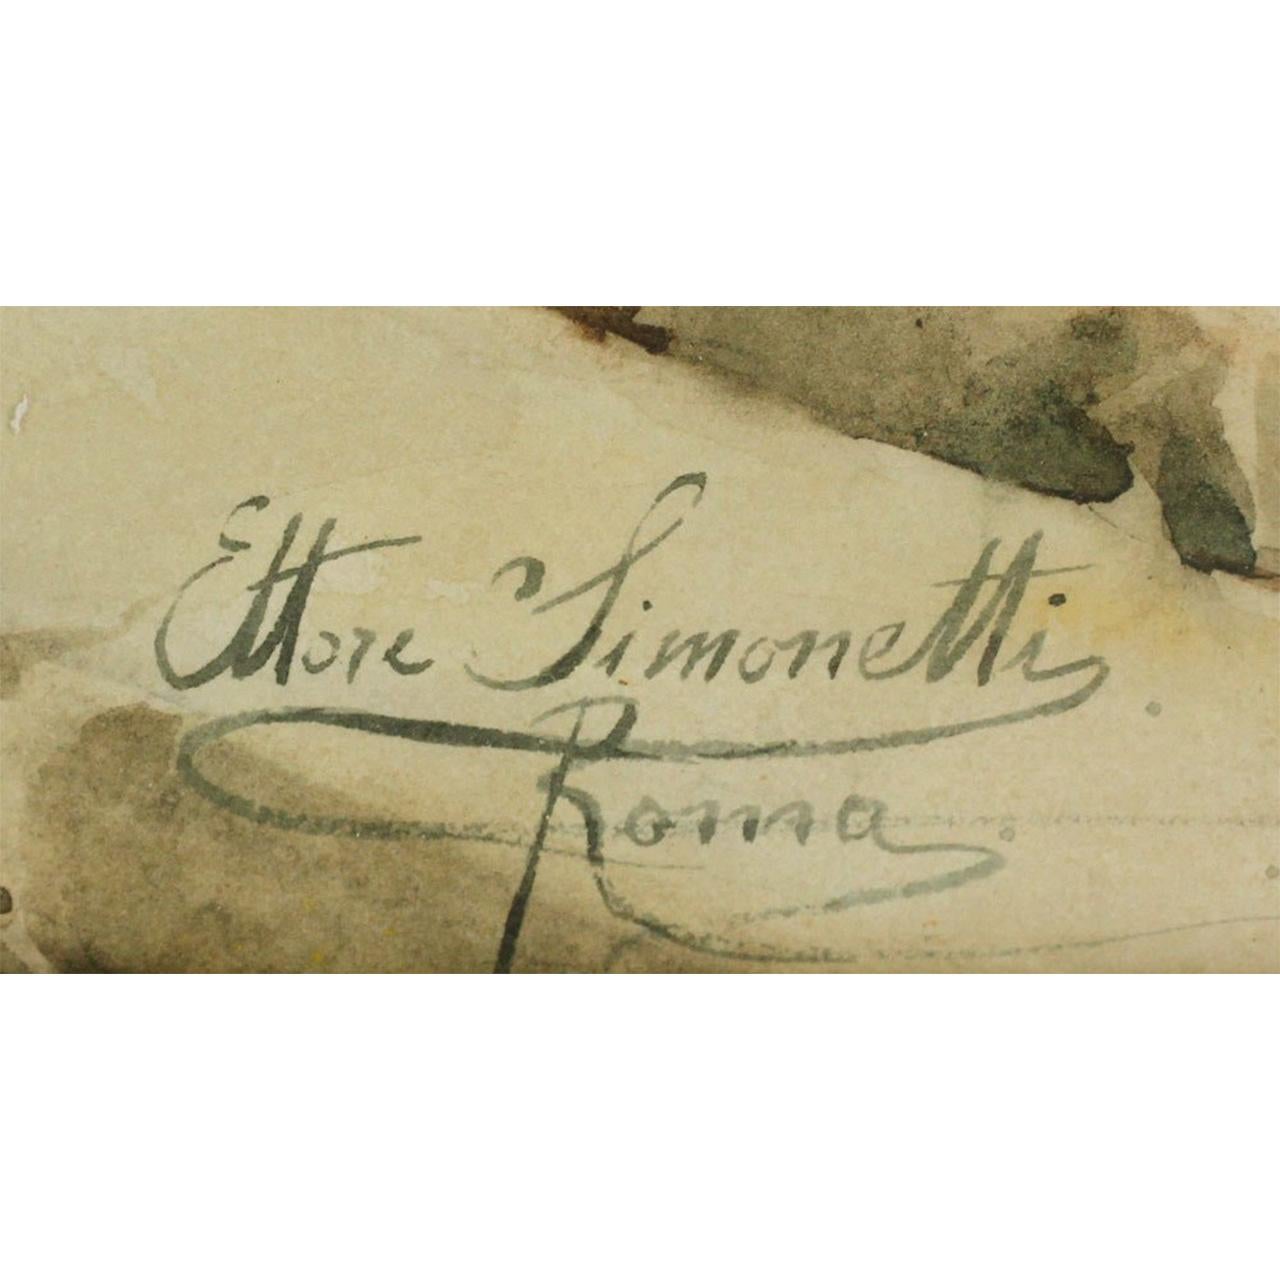 ETTORE SIMONETTI
Italian, 1857-1909

Market Scene 

Signed ‘Ettore Simonetti, Roma’  

Watercolor on paper
22 x 30 inches 